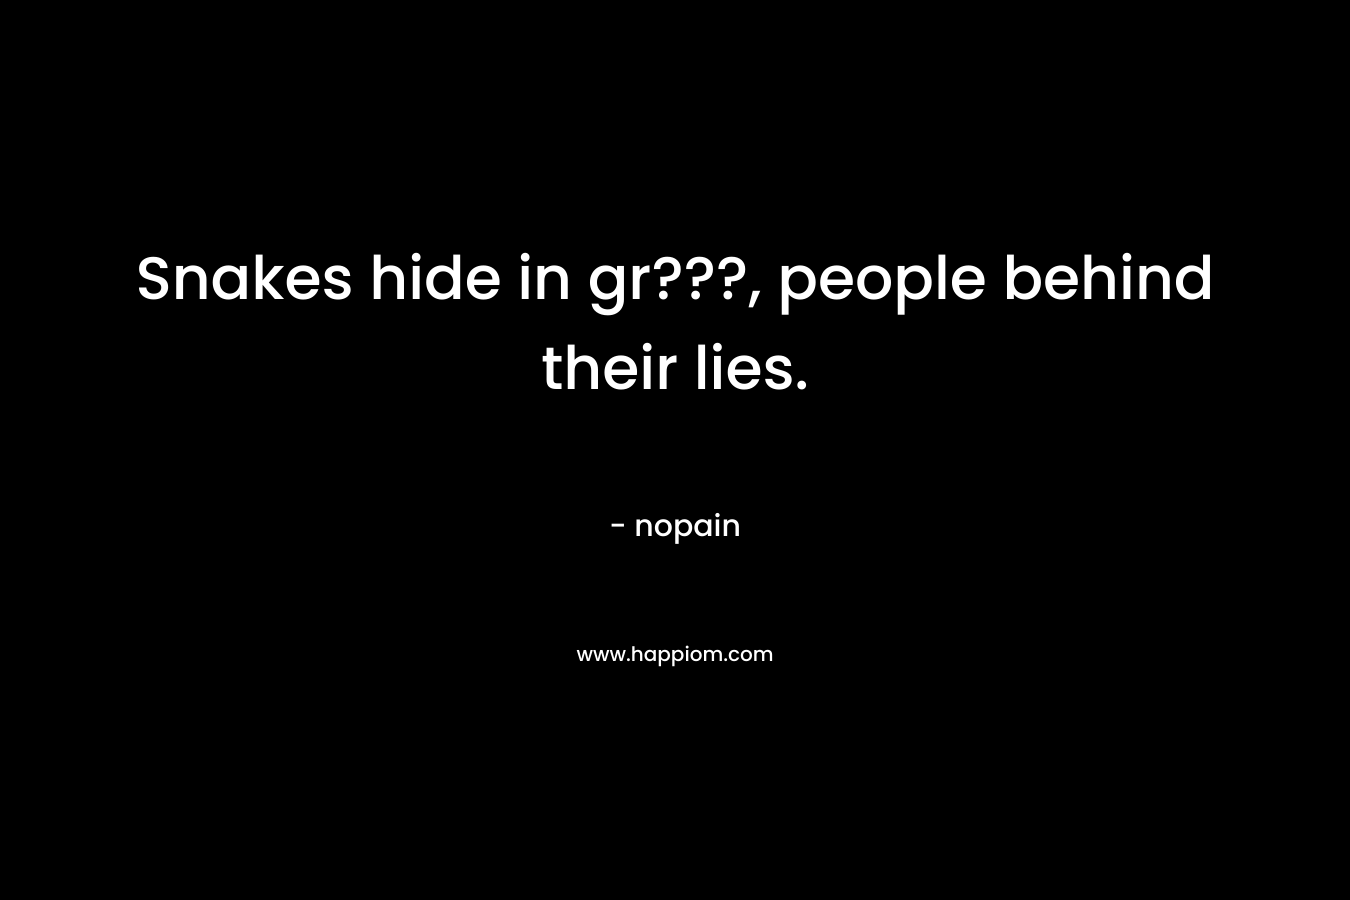 Snakes hide in gr???, people behind their lies. – nopain